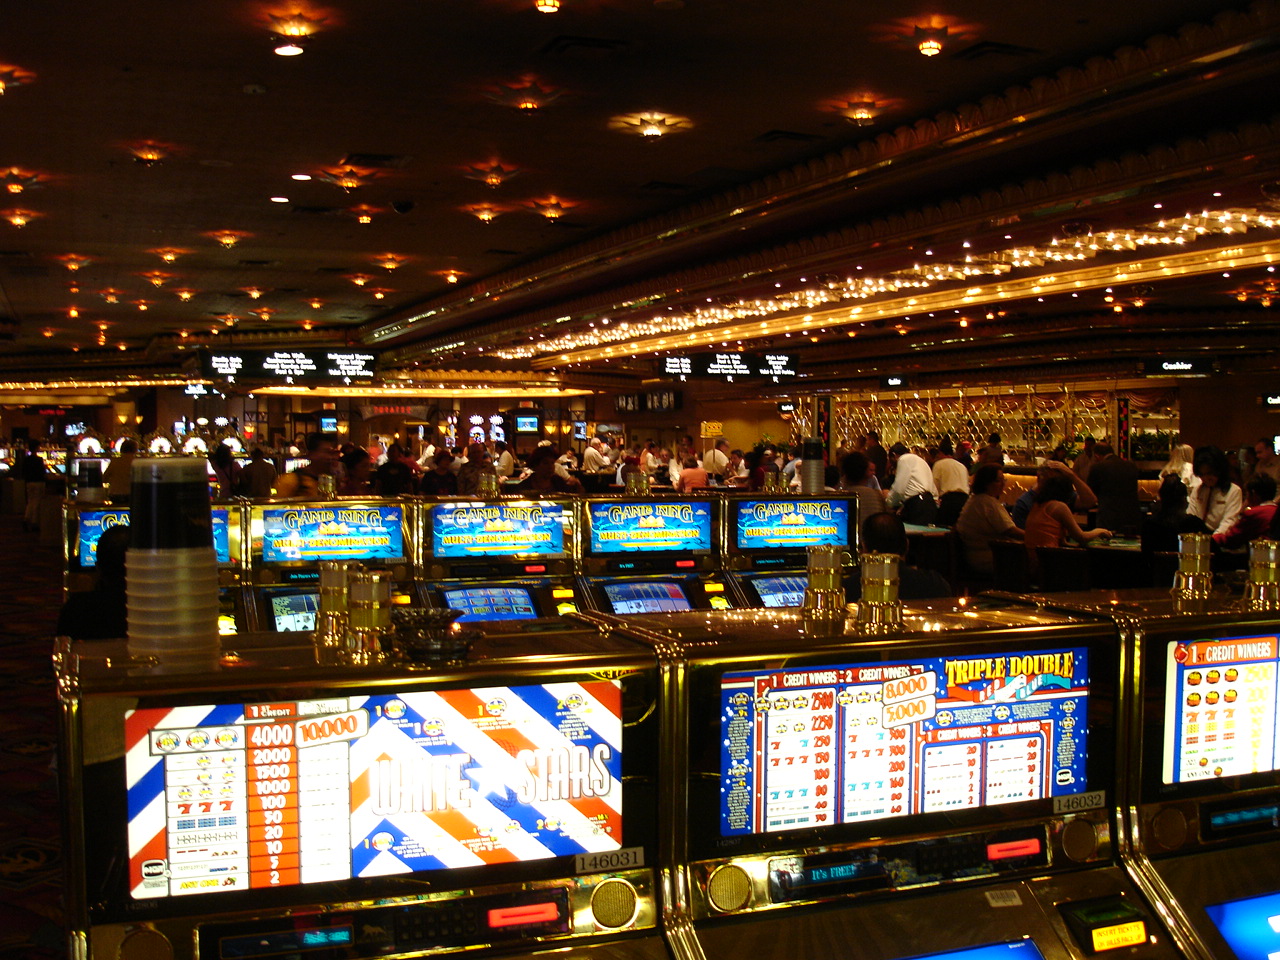 Онлайн азартные игры игровые автоматы играть сейчас онлайн бесплатно